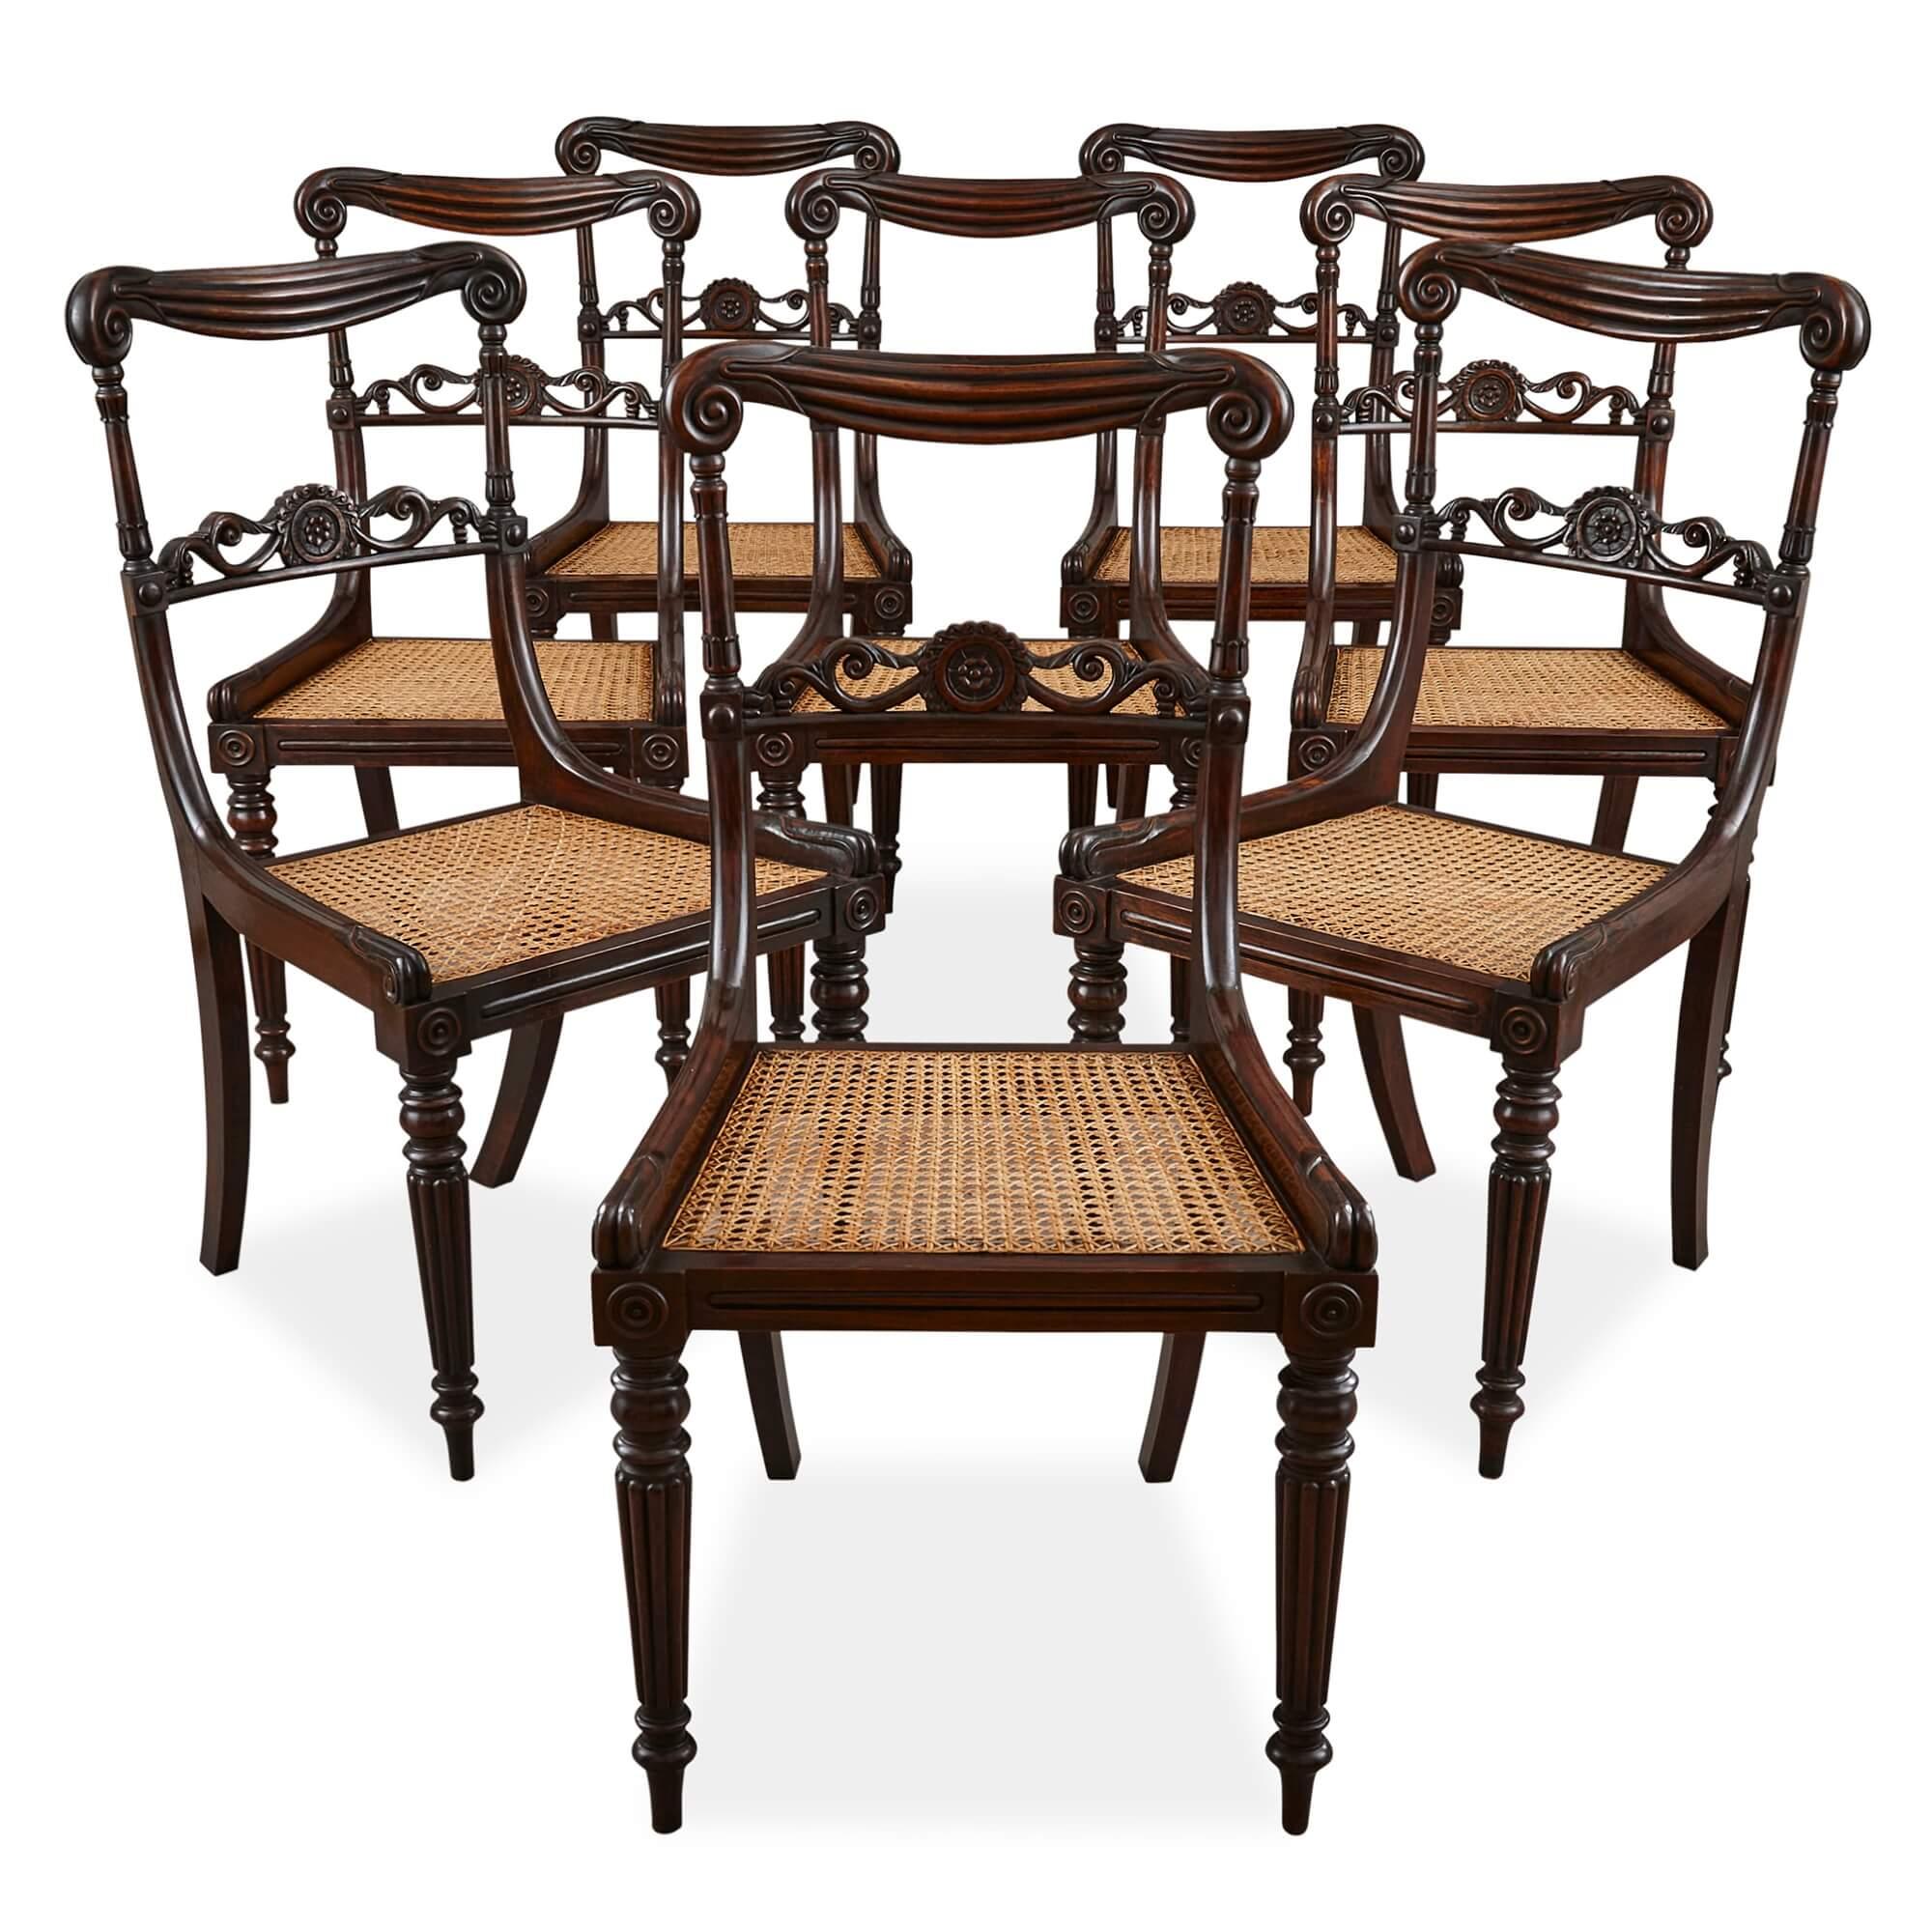 Ensemble de huit chaises anglaises anciennes de la fin de l'époque victorienne
Anglais, c.I.C.
Mesures : Hauteur 87cm, largeur 46cm, profondeur 48cm

Ces excellentes chaises ont été fabriquées à la fin du XIXe siècle dans l'Angleterre